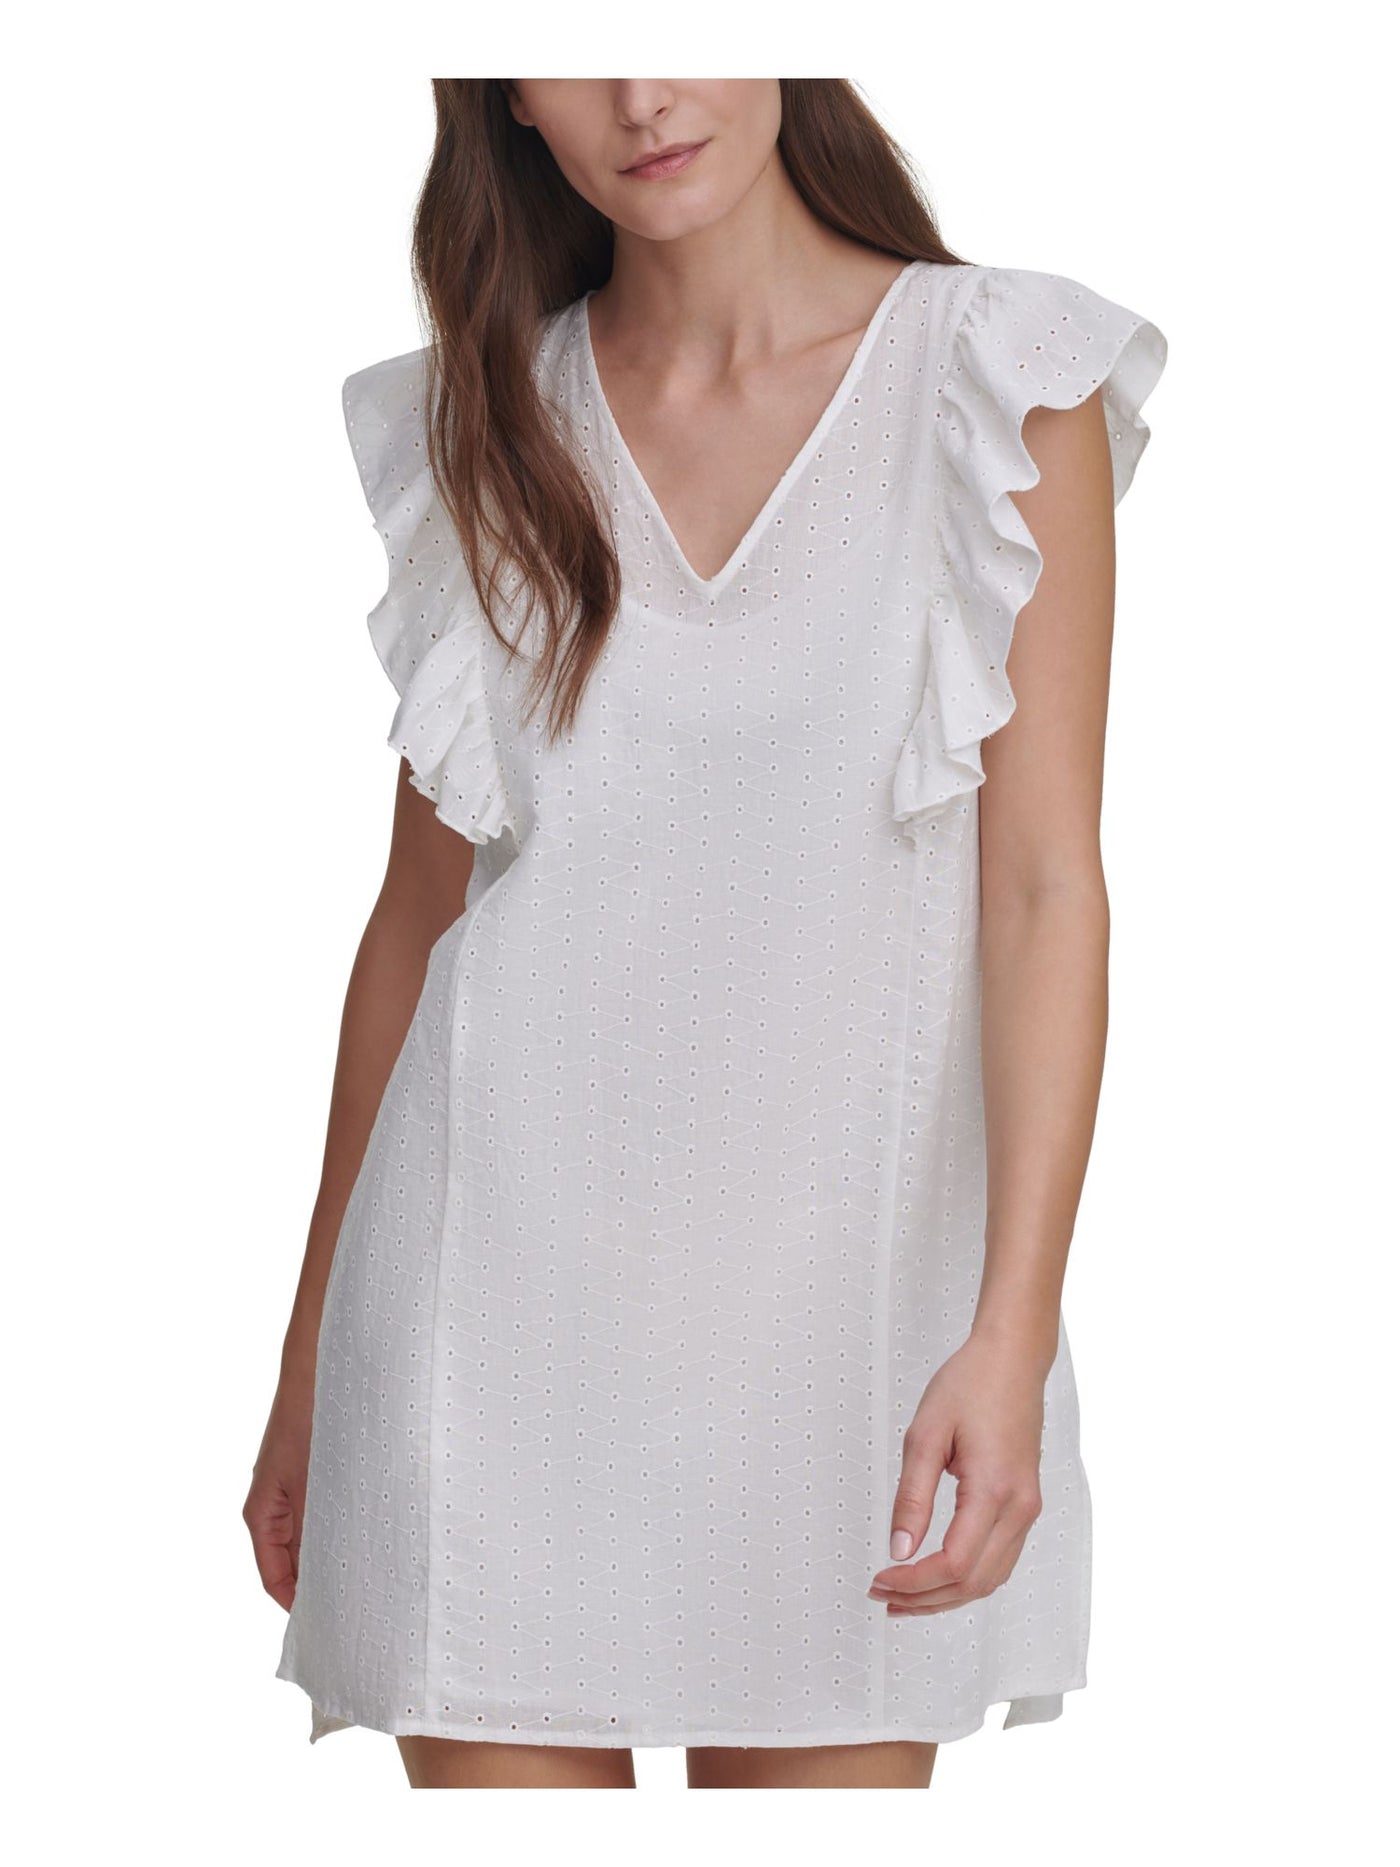 DKNY JEANS Womens White Eyelet Ruffled Unlined Flutter Sleeve V Neck Short Shift Dress XS